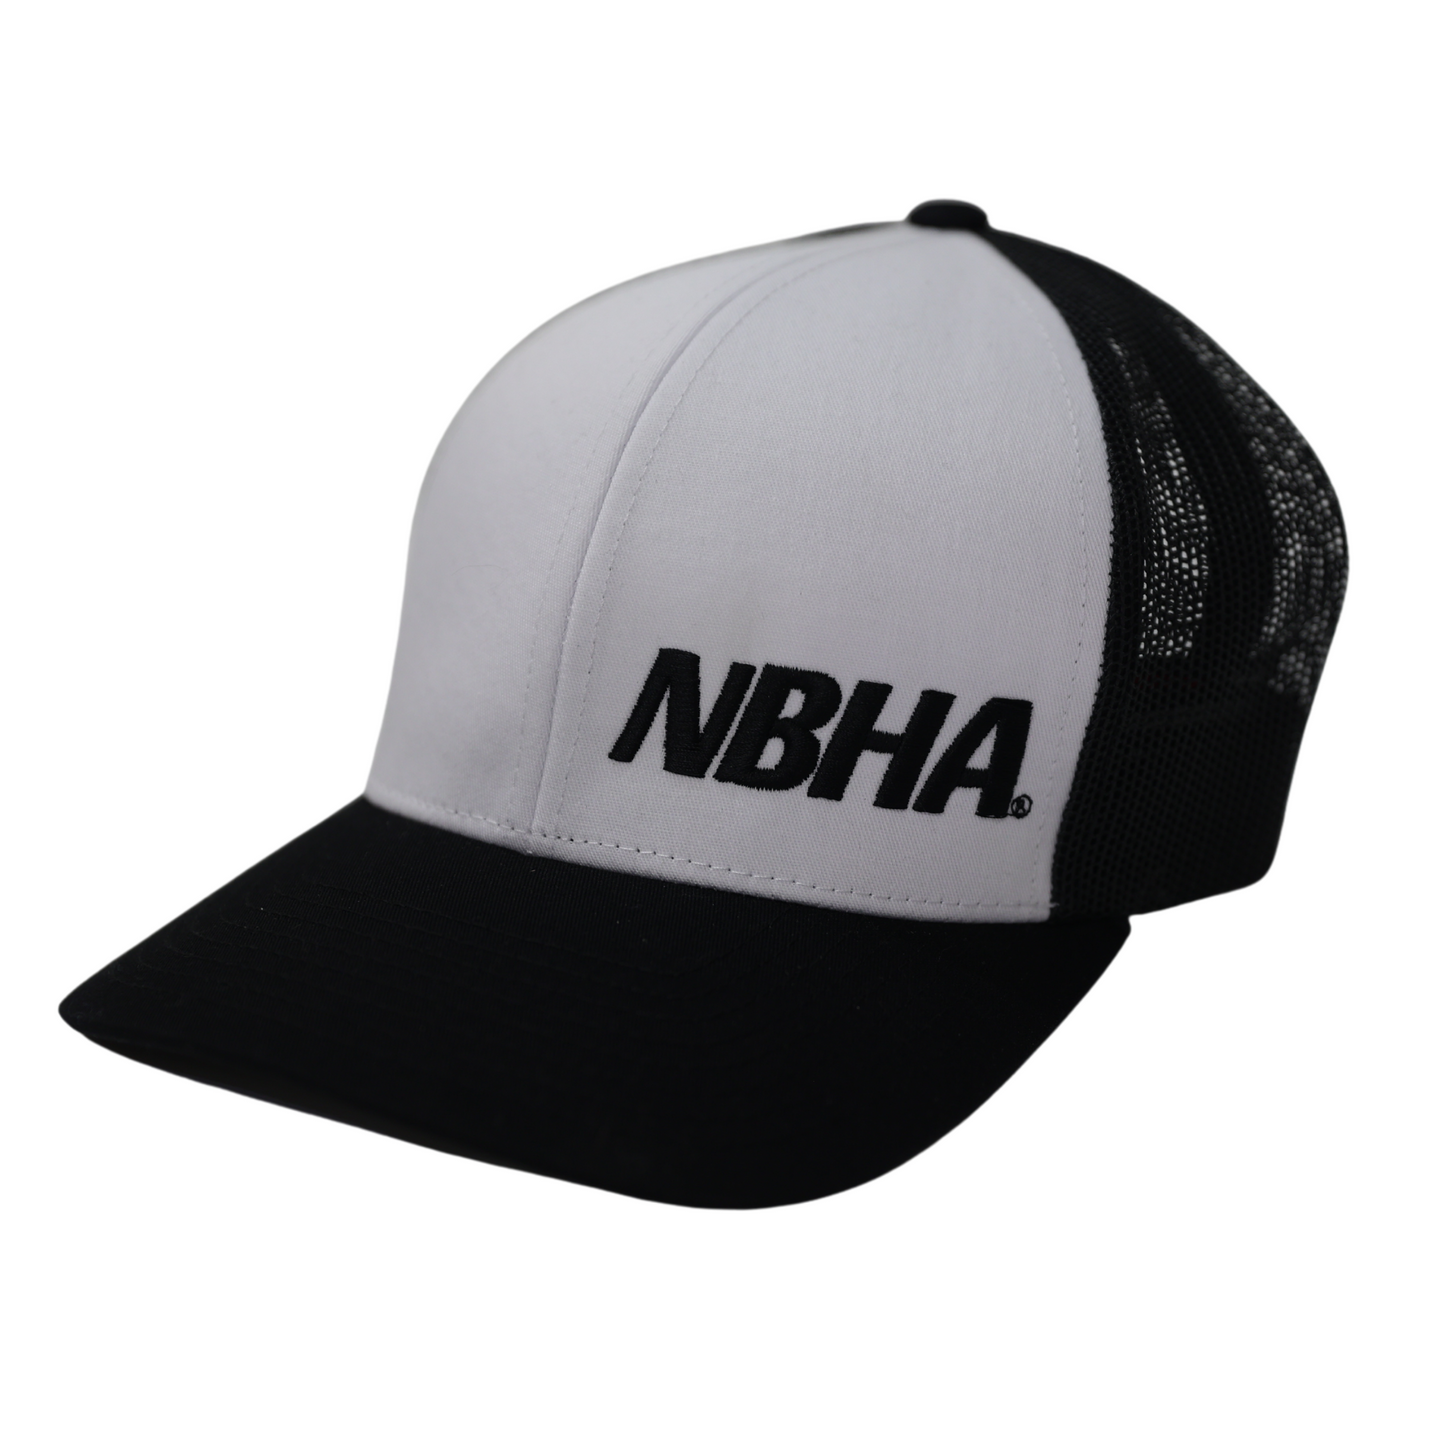 NBHA Trucker Hat : White/Black